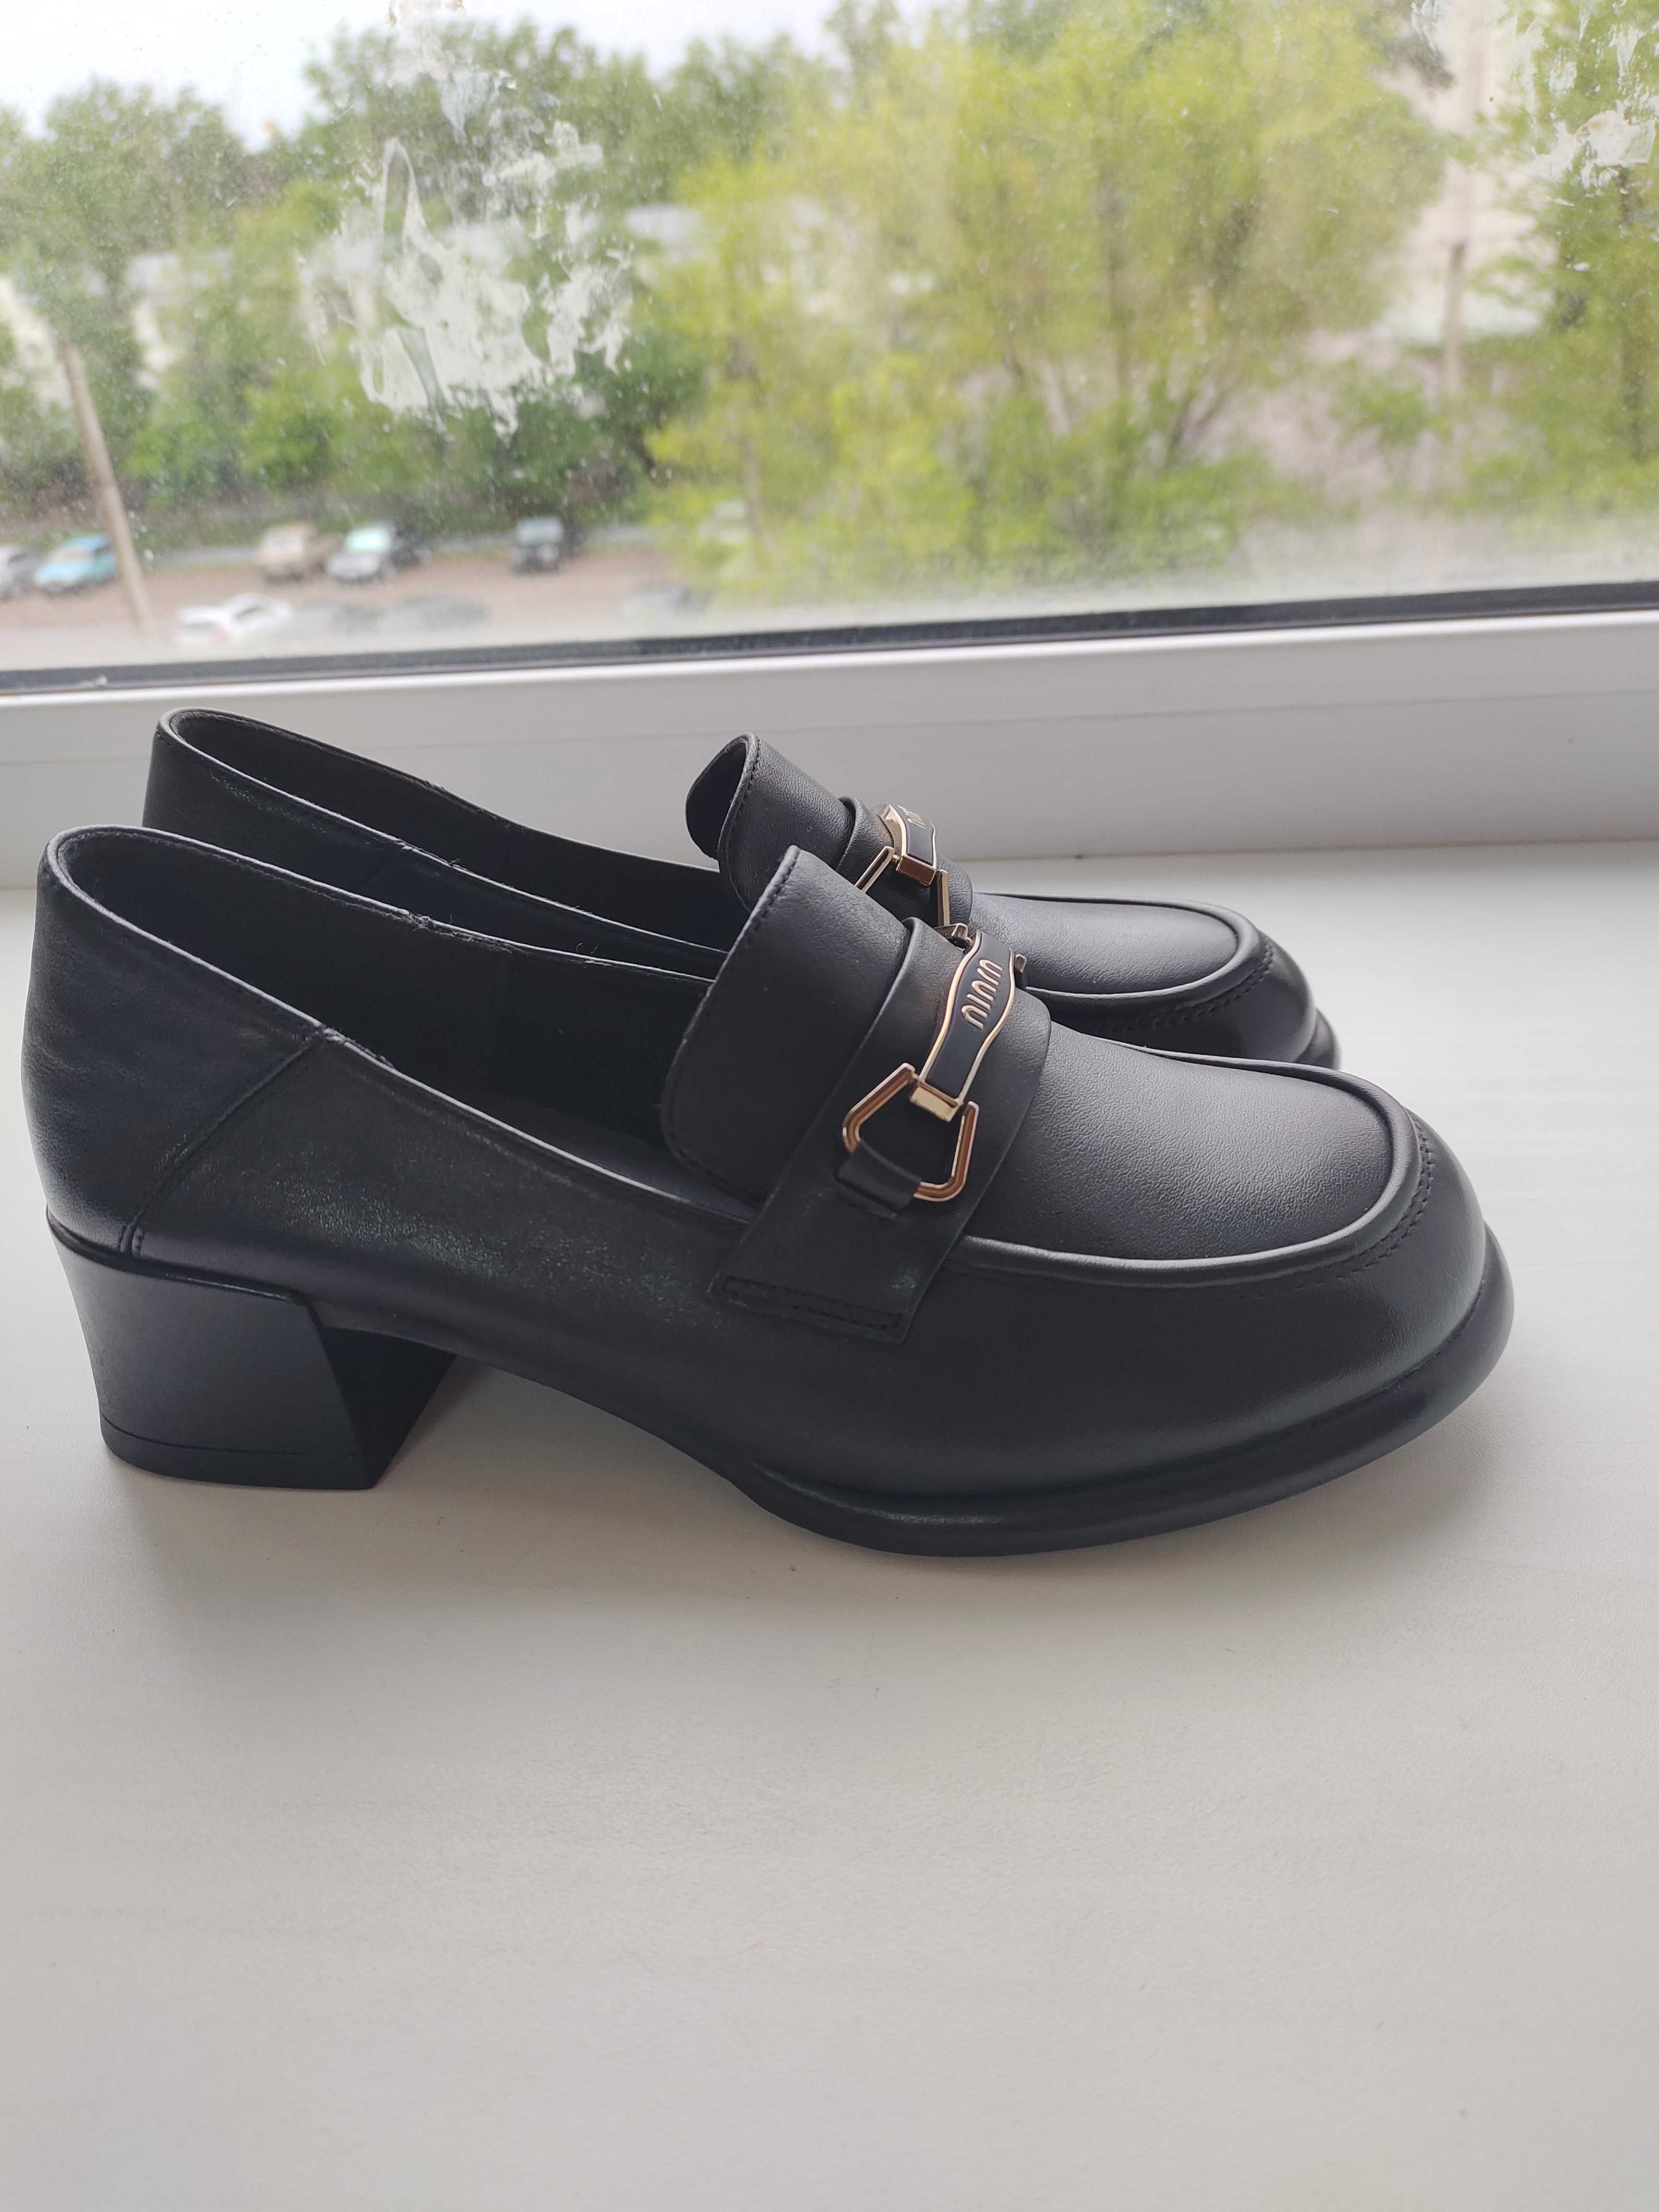 туфли кожа черные новые пр-во Гуанджоу, размер 23,5(36-37)